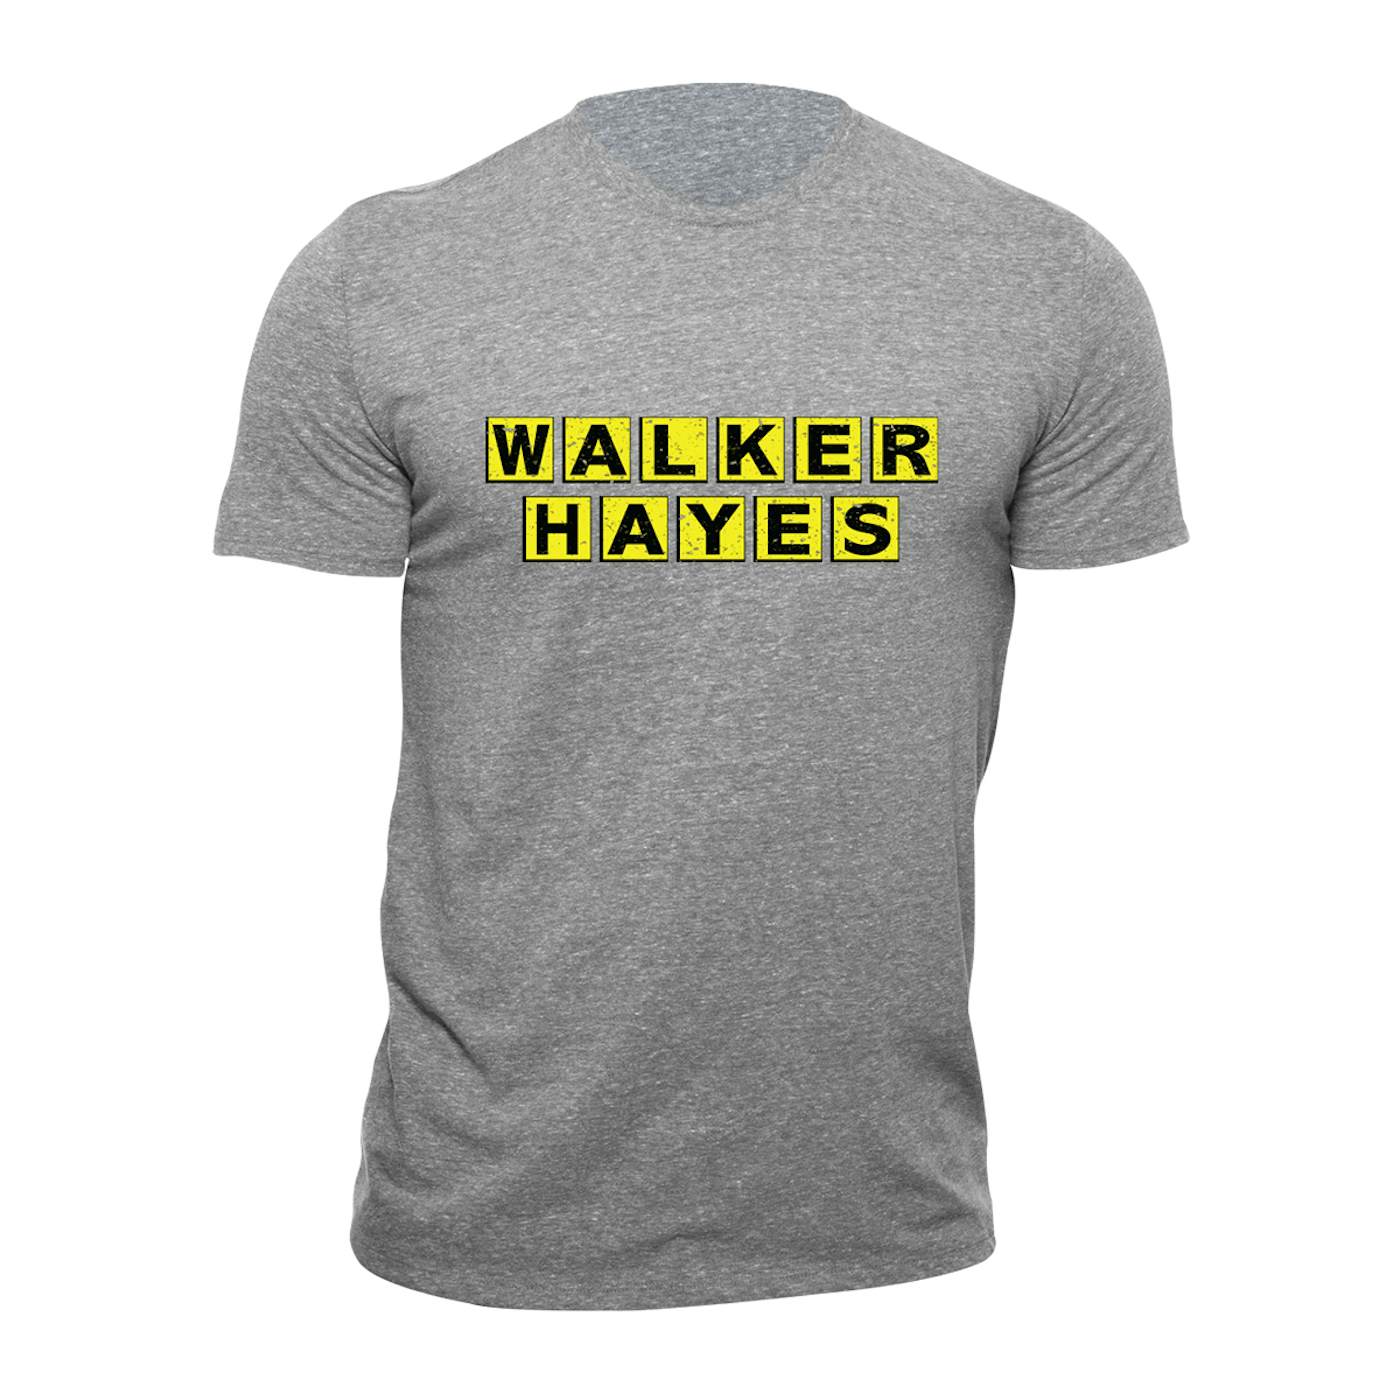 Walker Hayes T-shirt